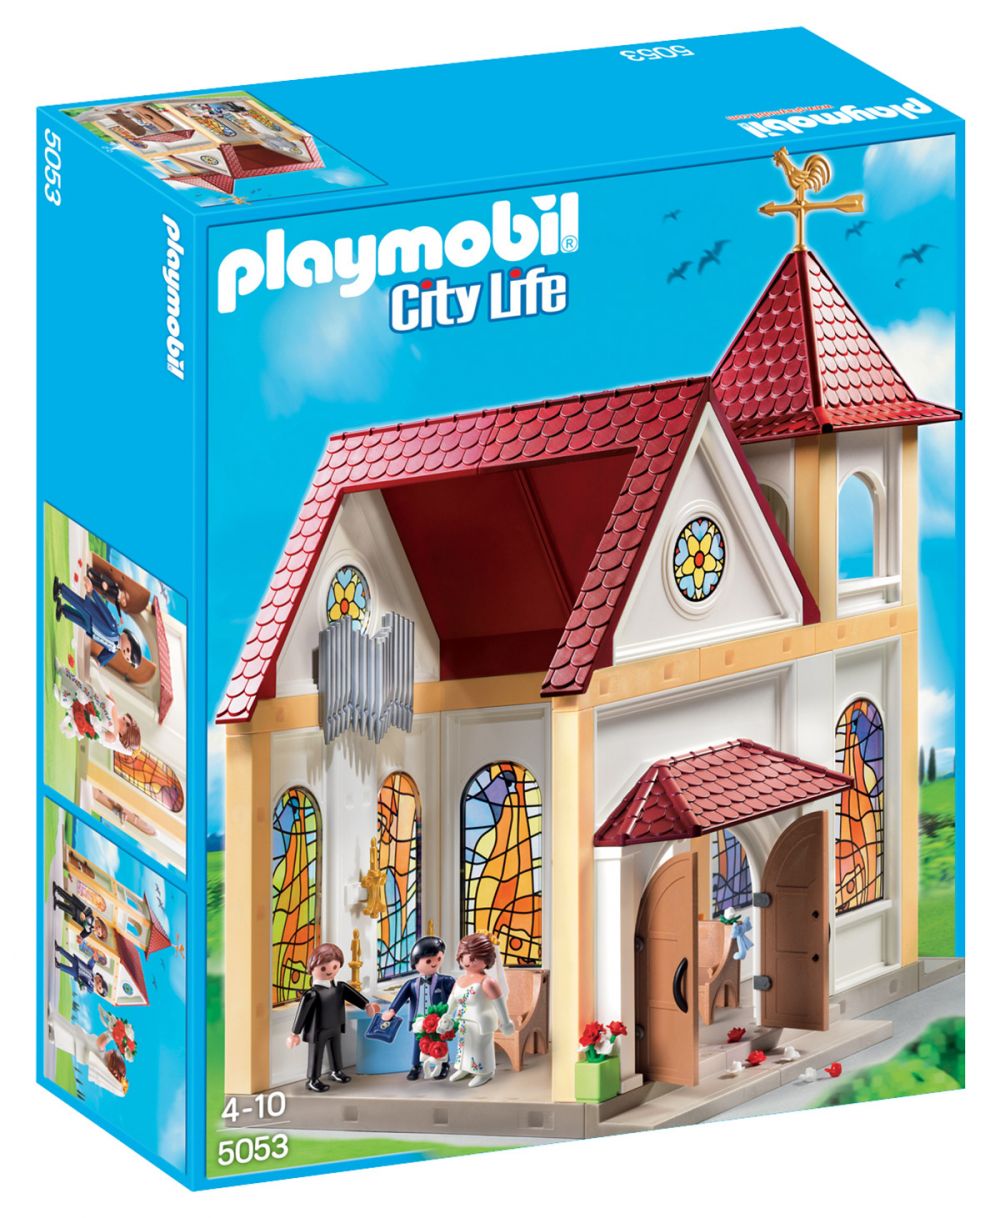 Playmobil City Life 5053 pas cher, Eglise de mariage romantique